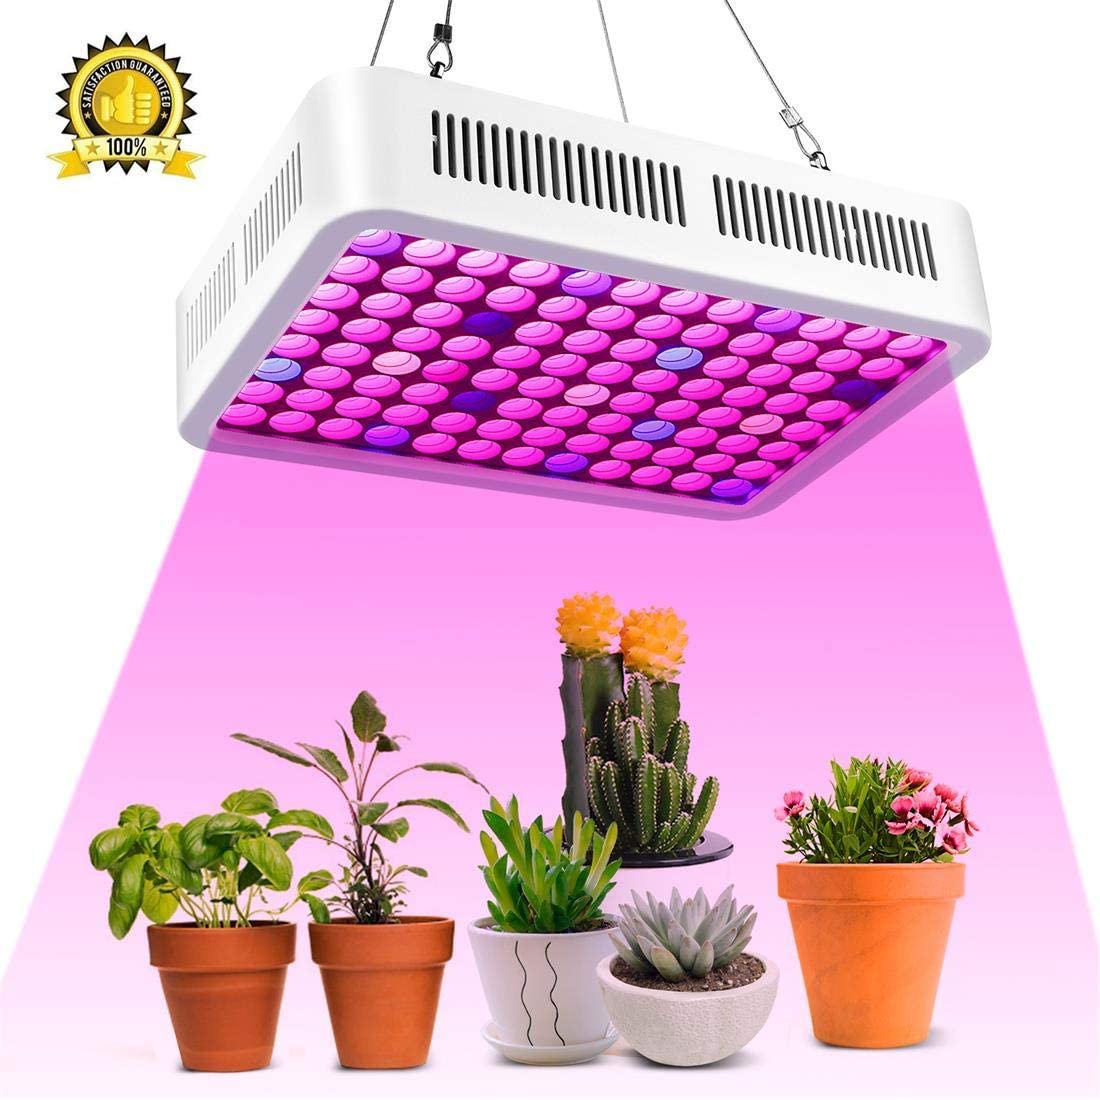 LED Grow Pflanzenlampe Pflanzenleuchte Pflanzenlicht Wachsen Licht Streifenlicht